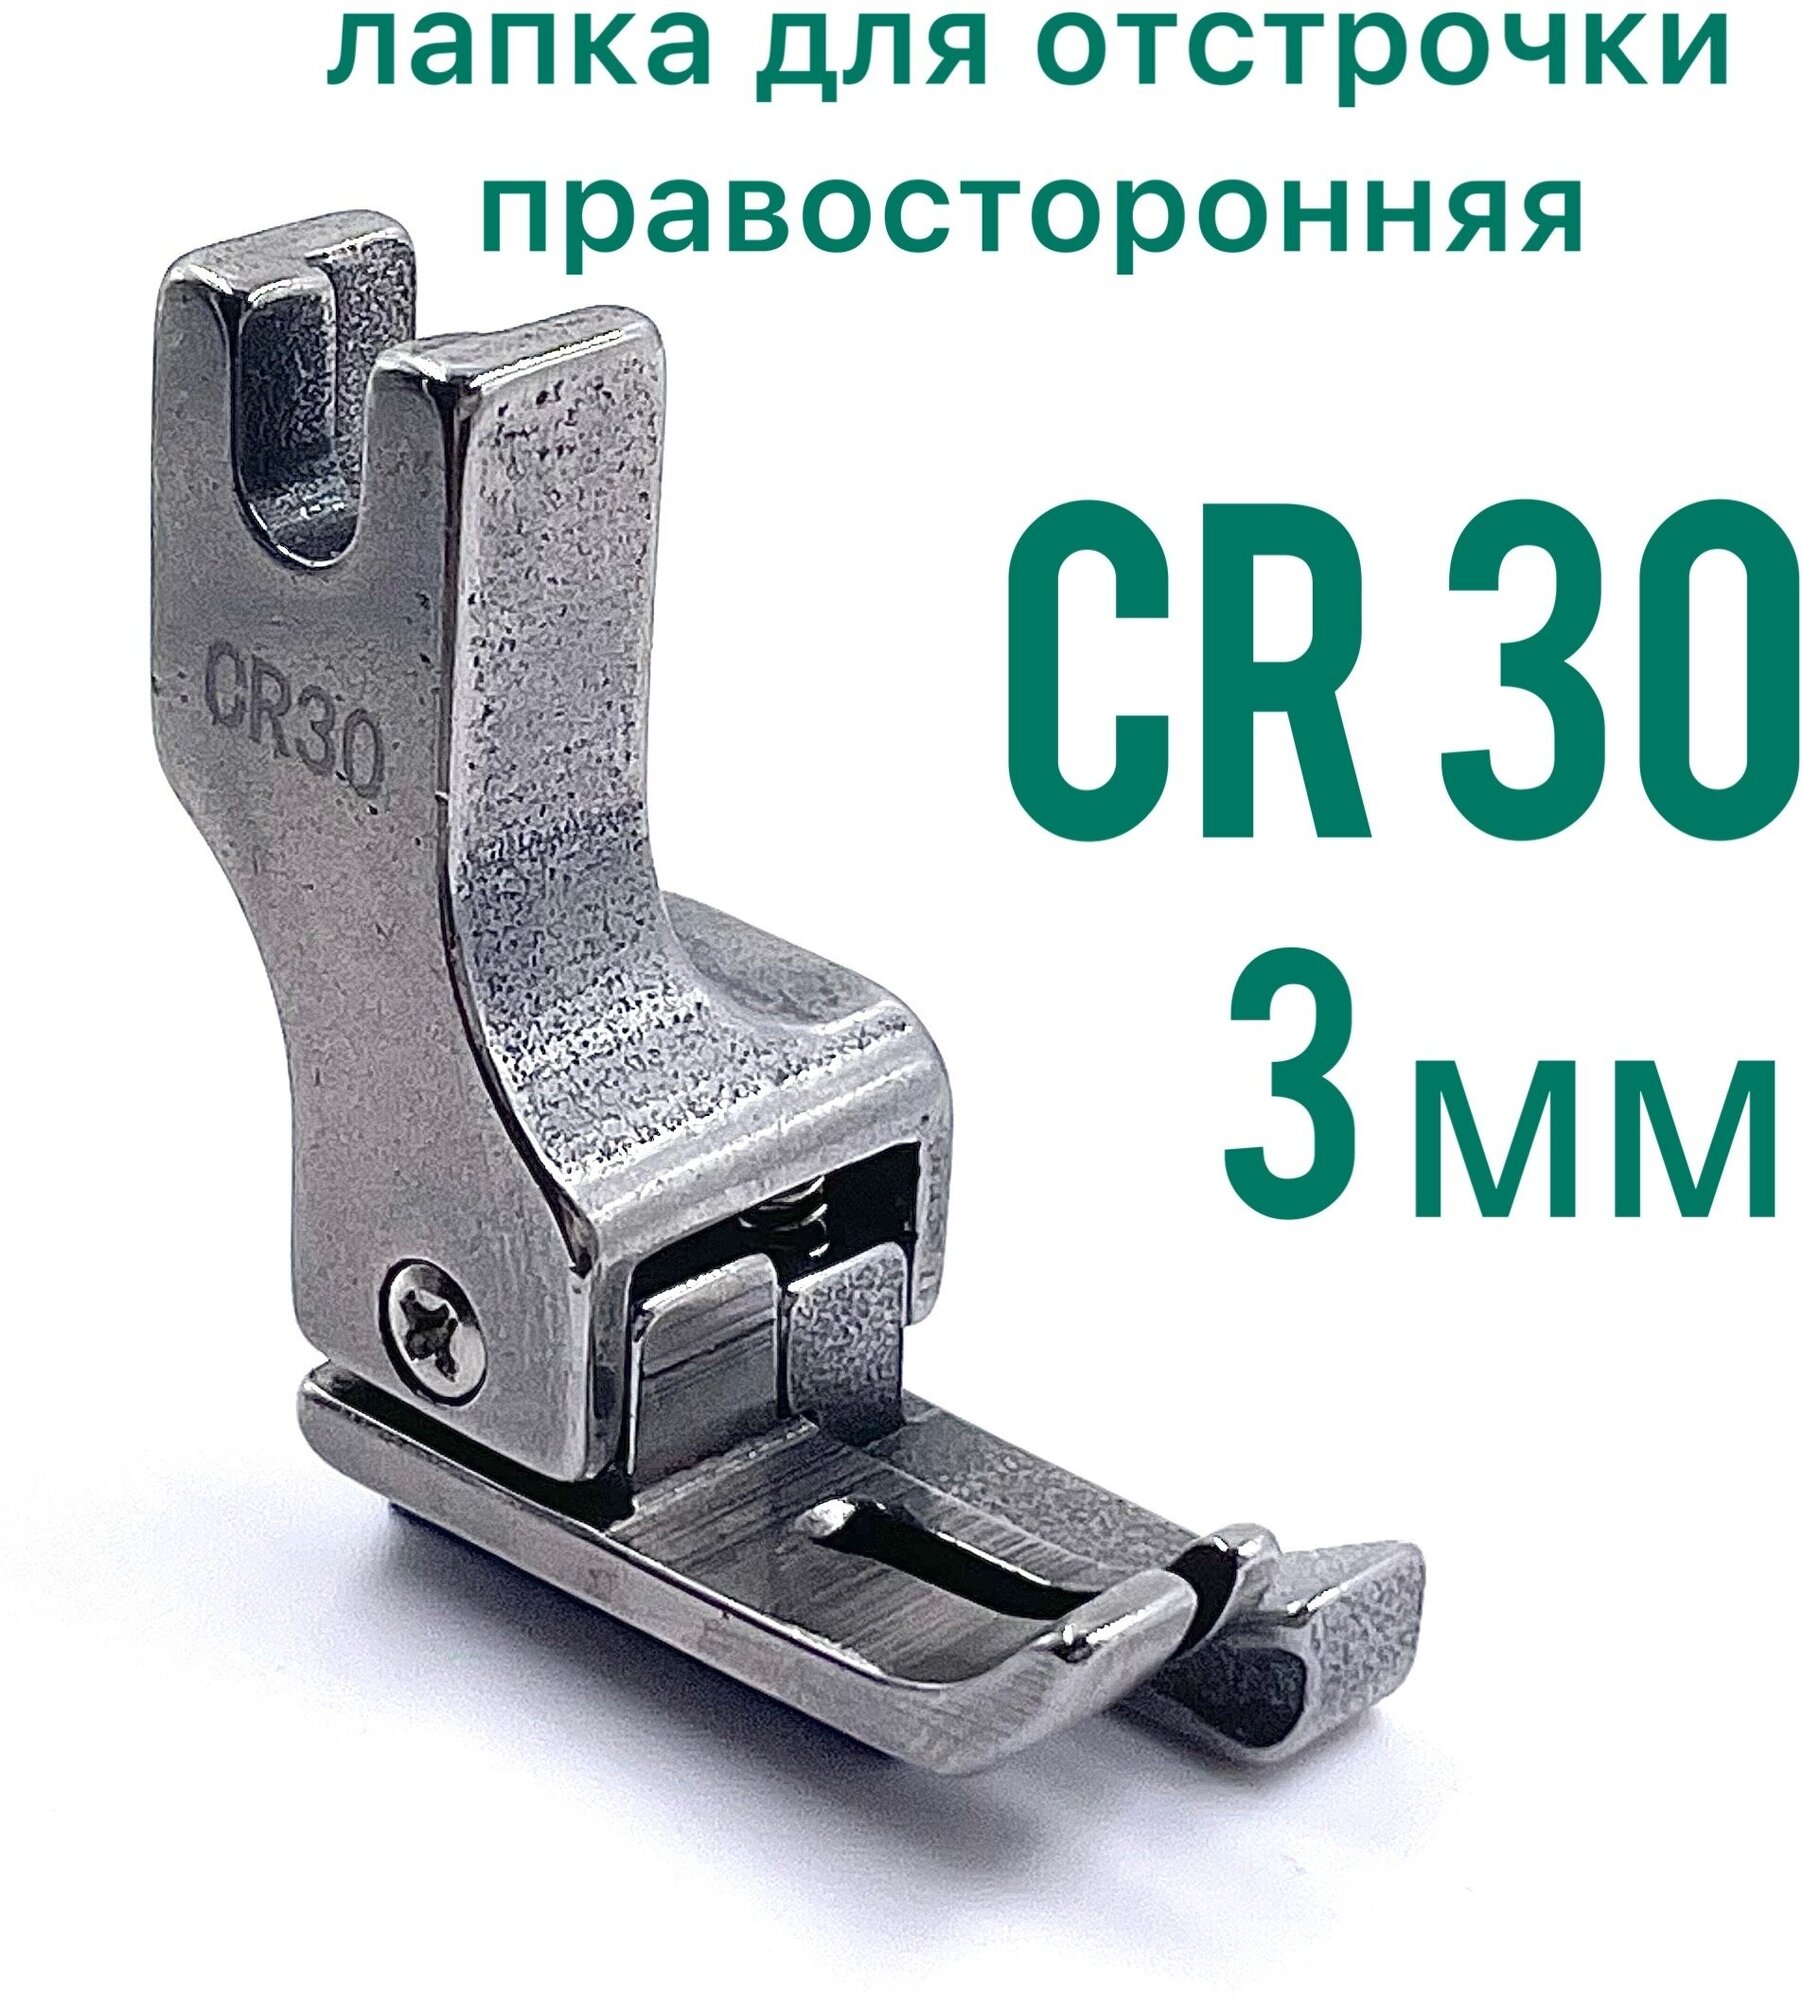 Лапка CR 30 (3мм ) правяая для отрочки изделия для прямострочной промышленной швейной машины